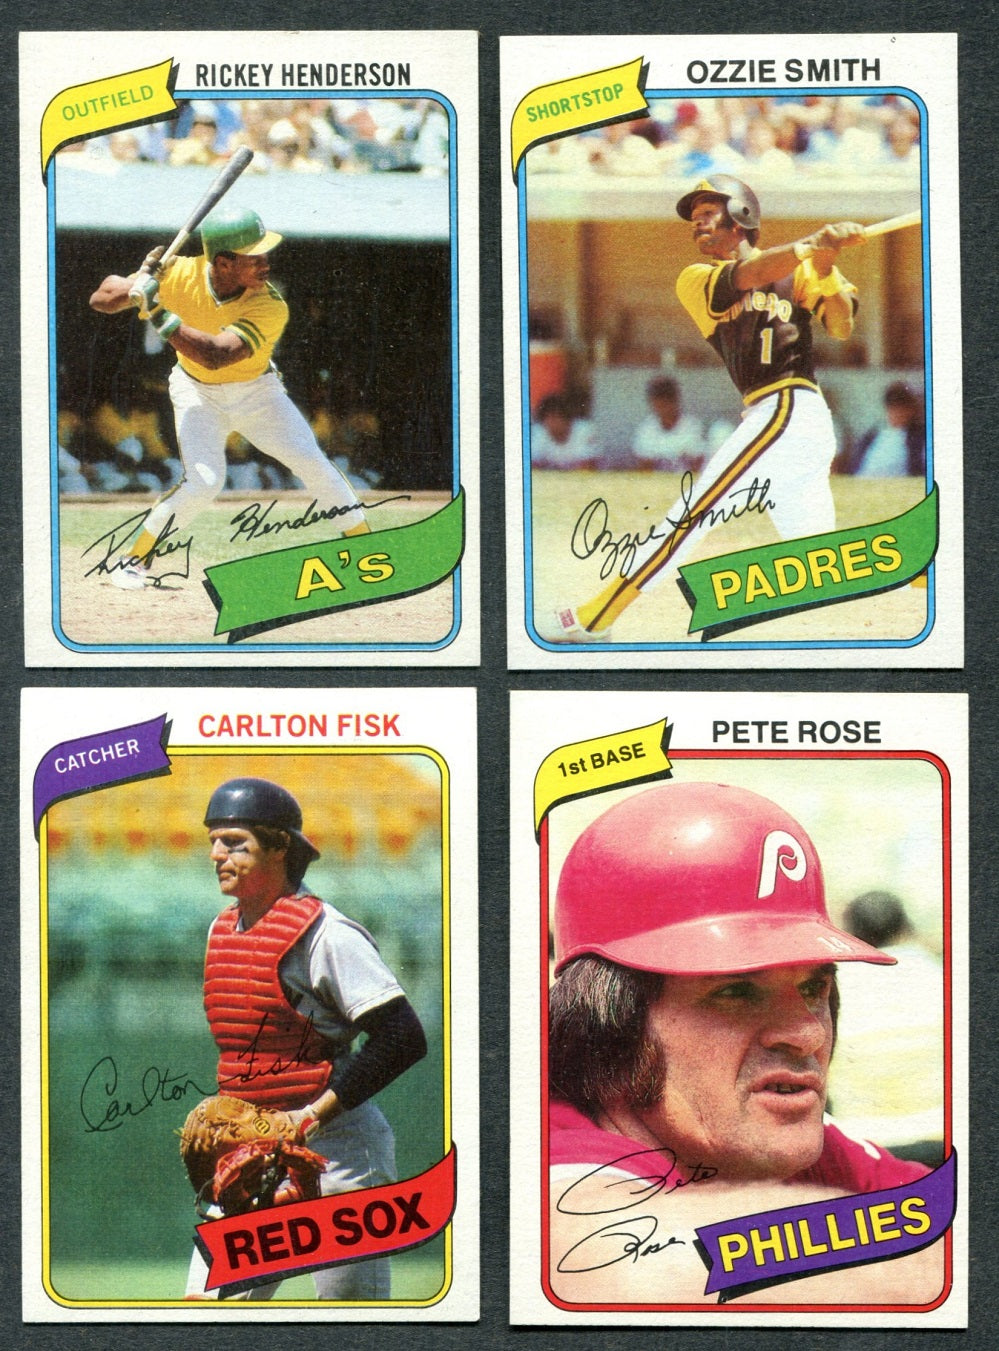 1980 Topps Baseball Complete Set NM (726) (23-318)